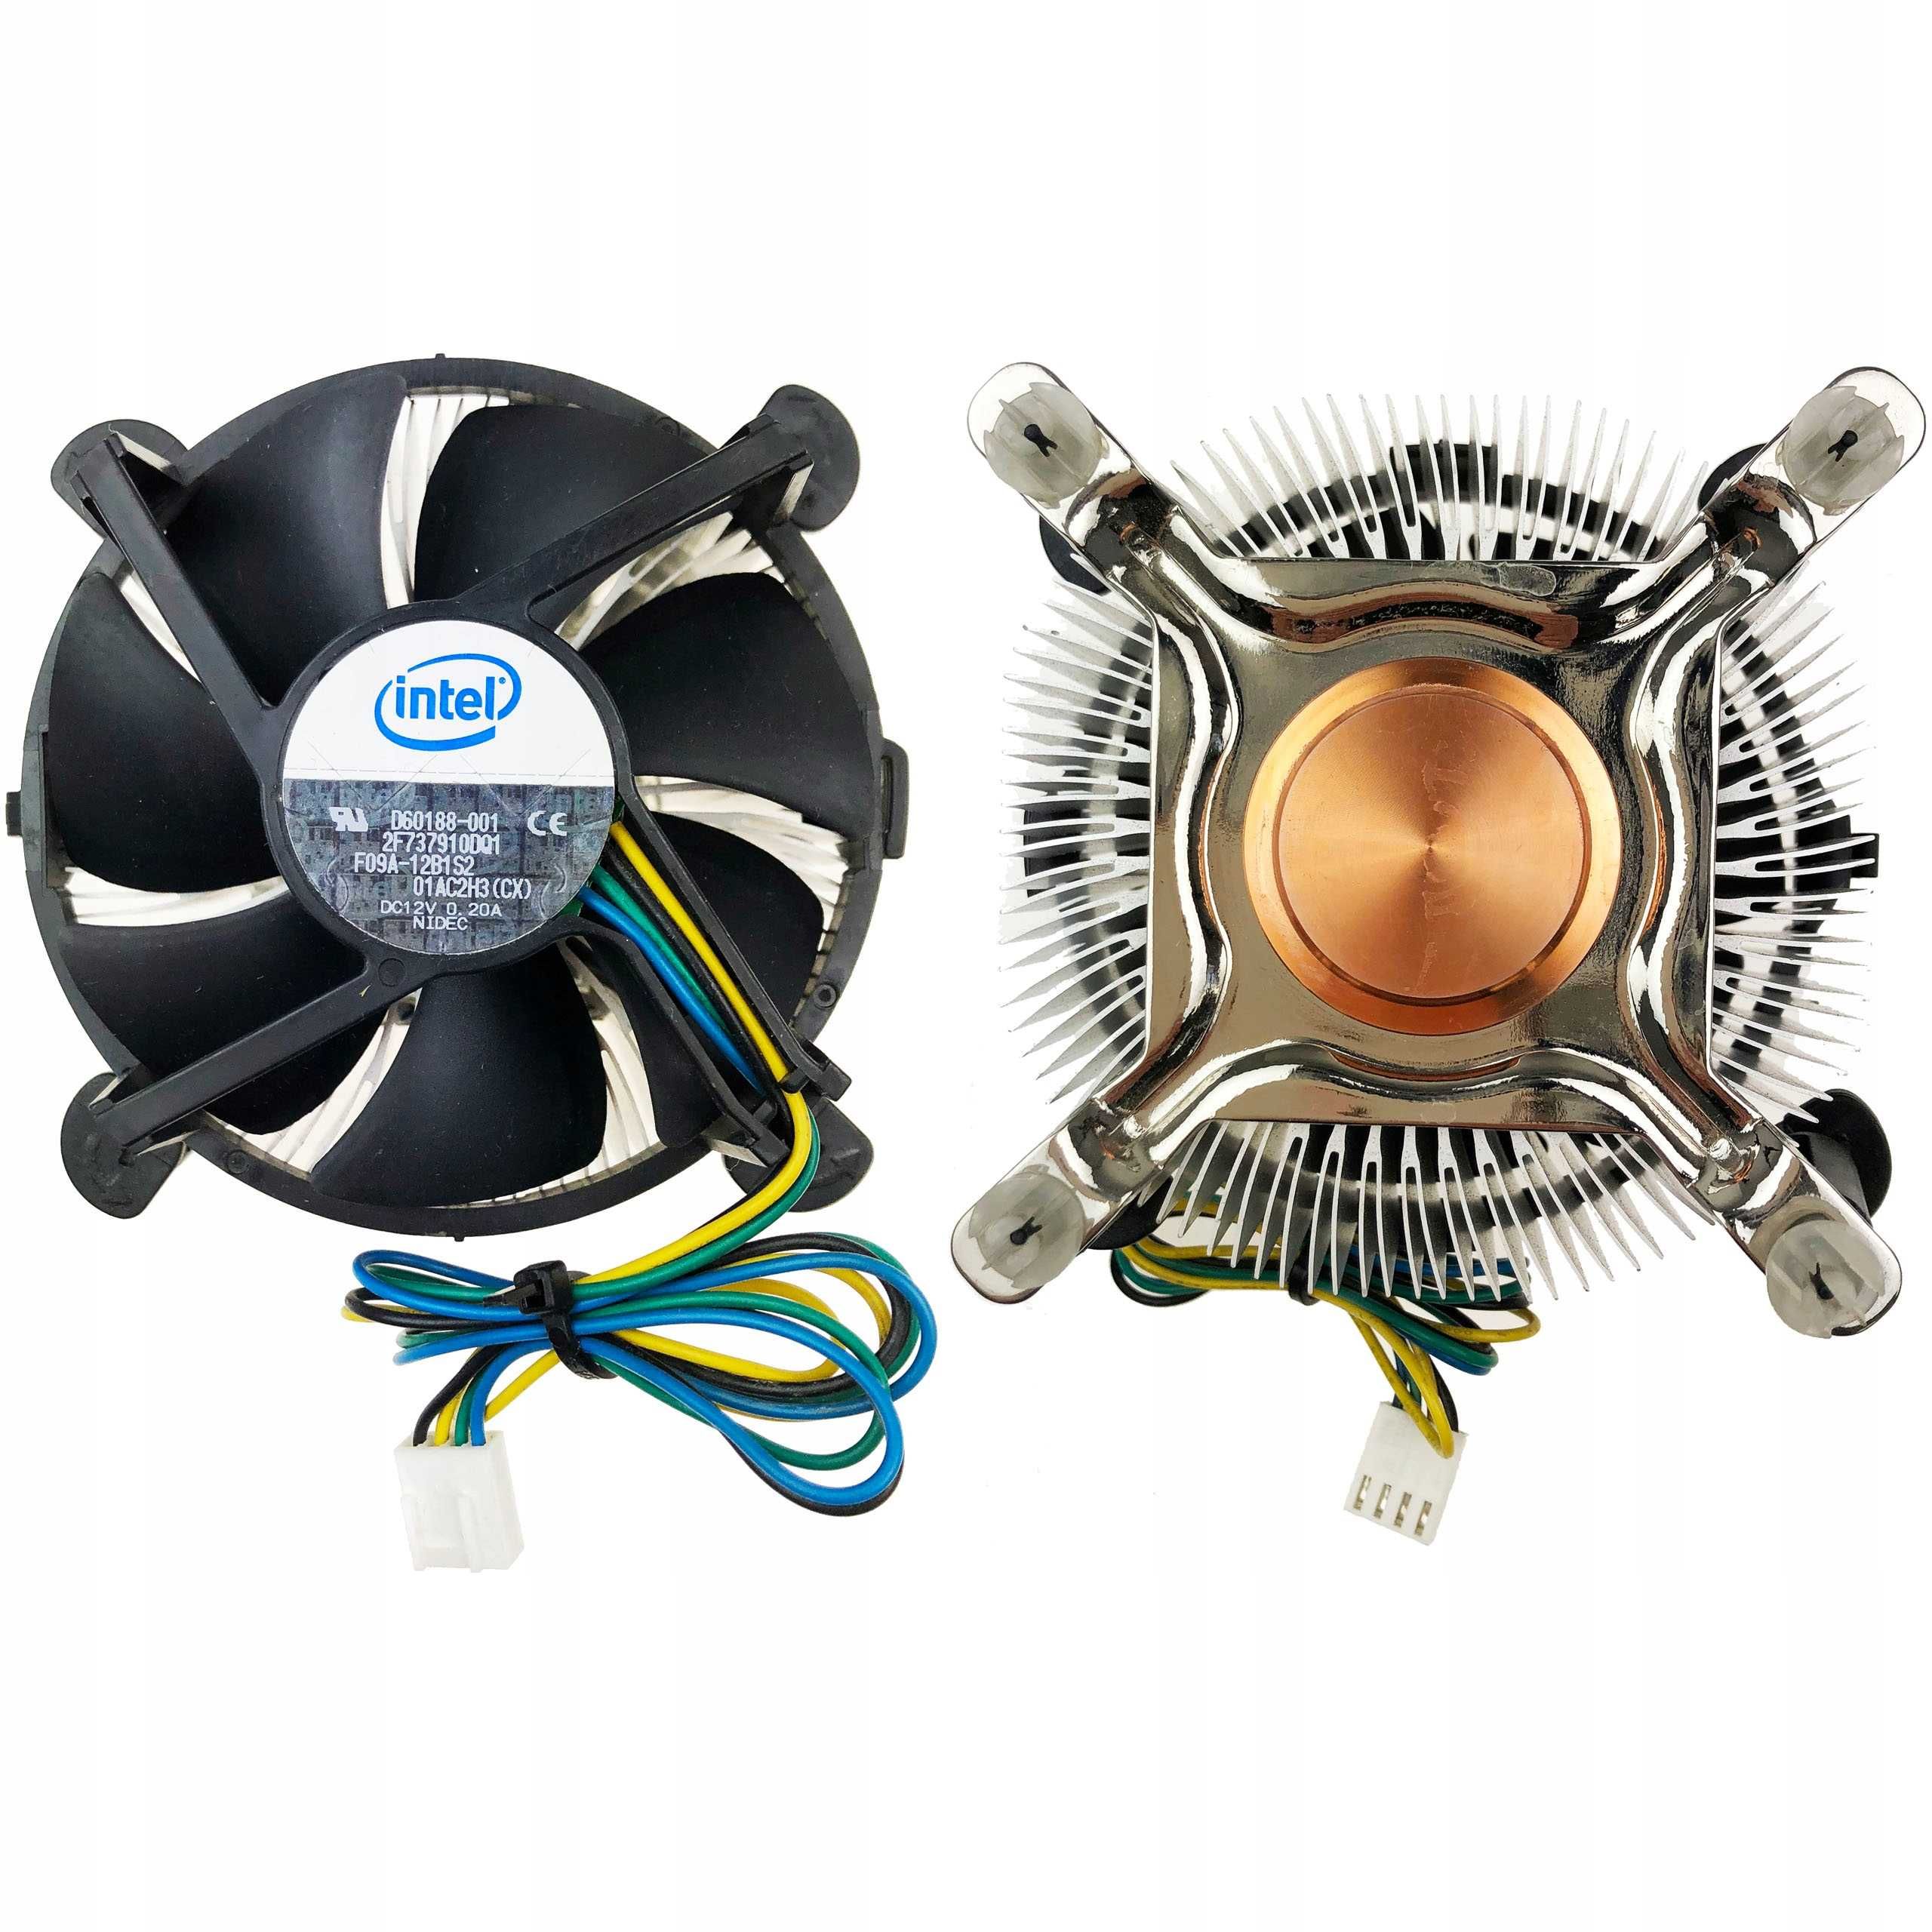 Cooler Intel Original socket 775 lga procesor